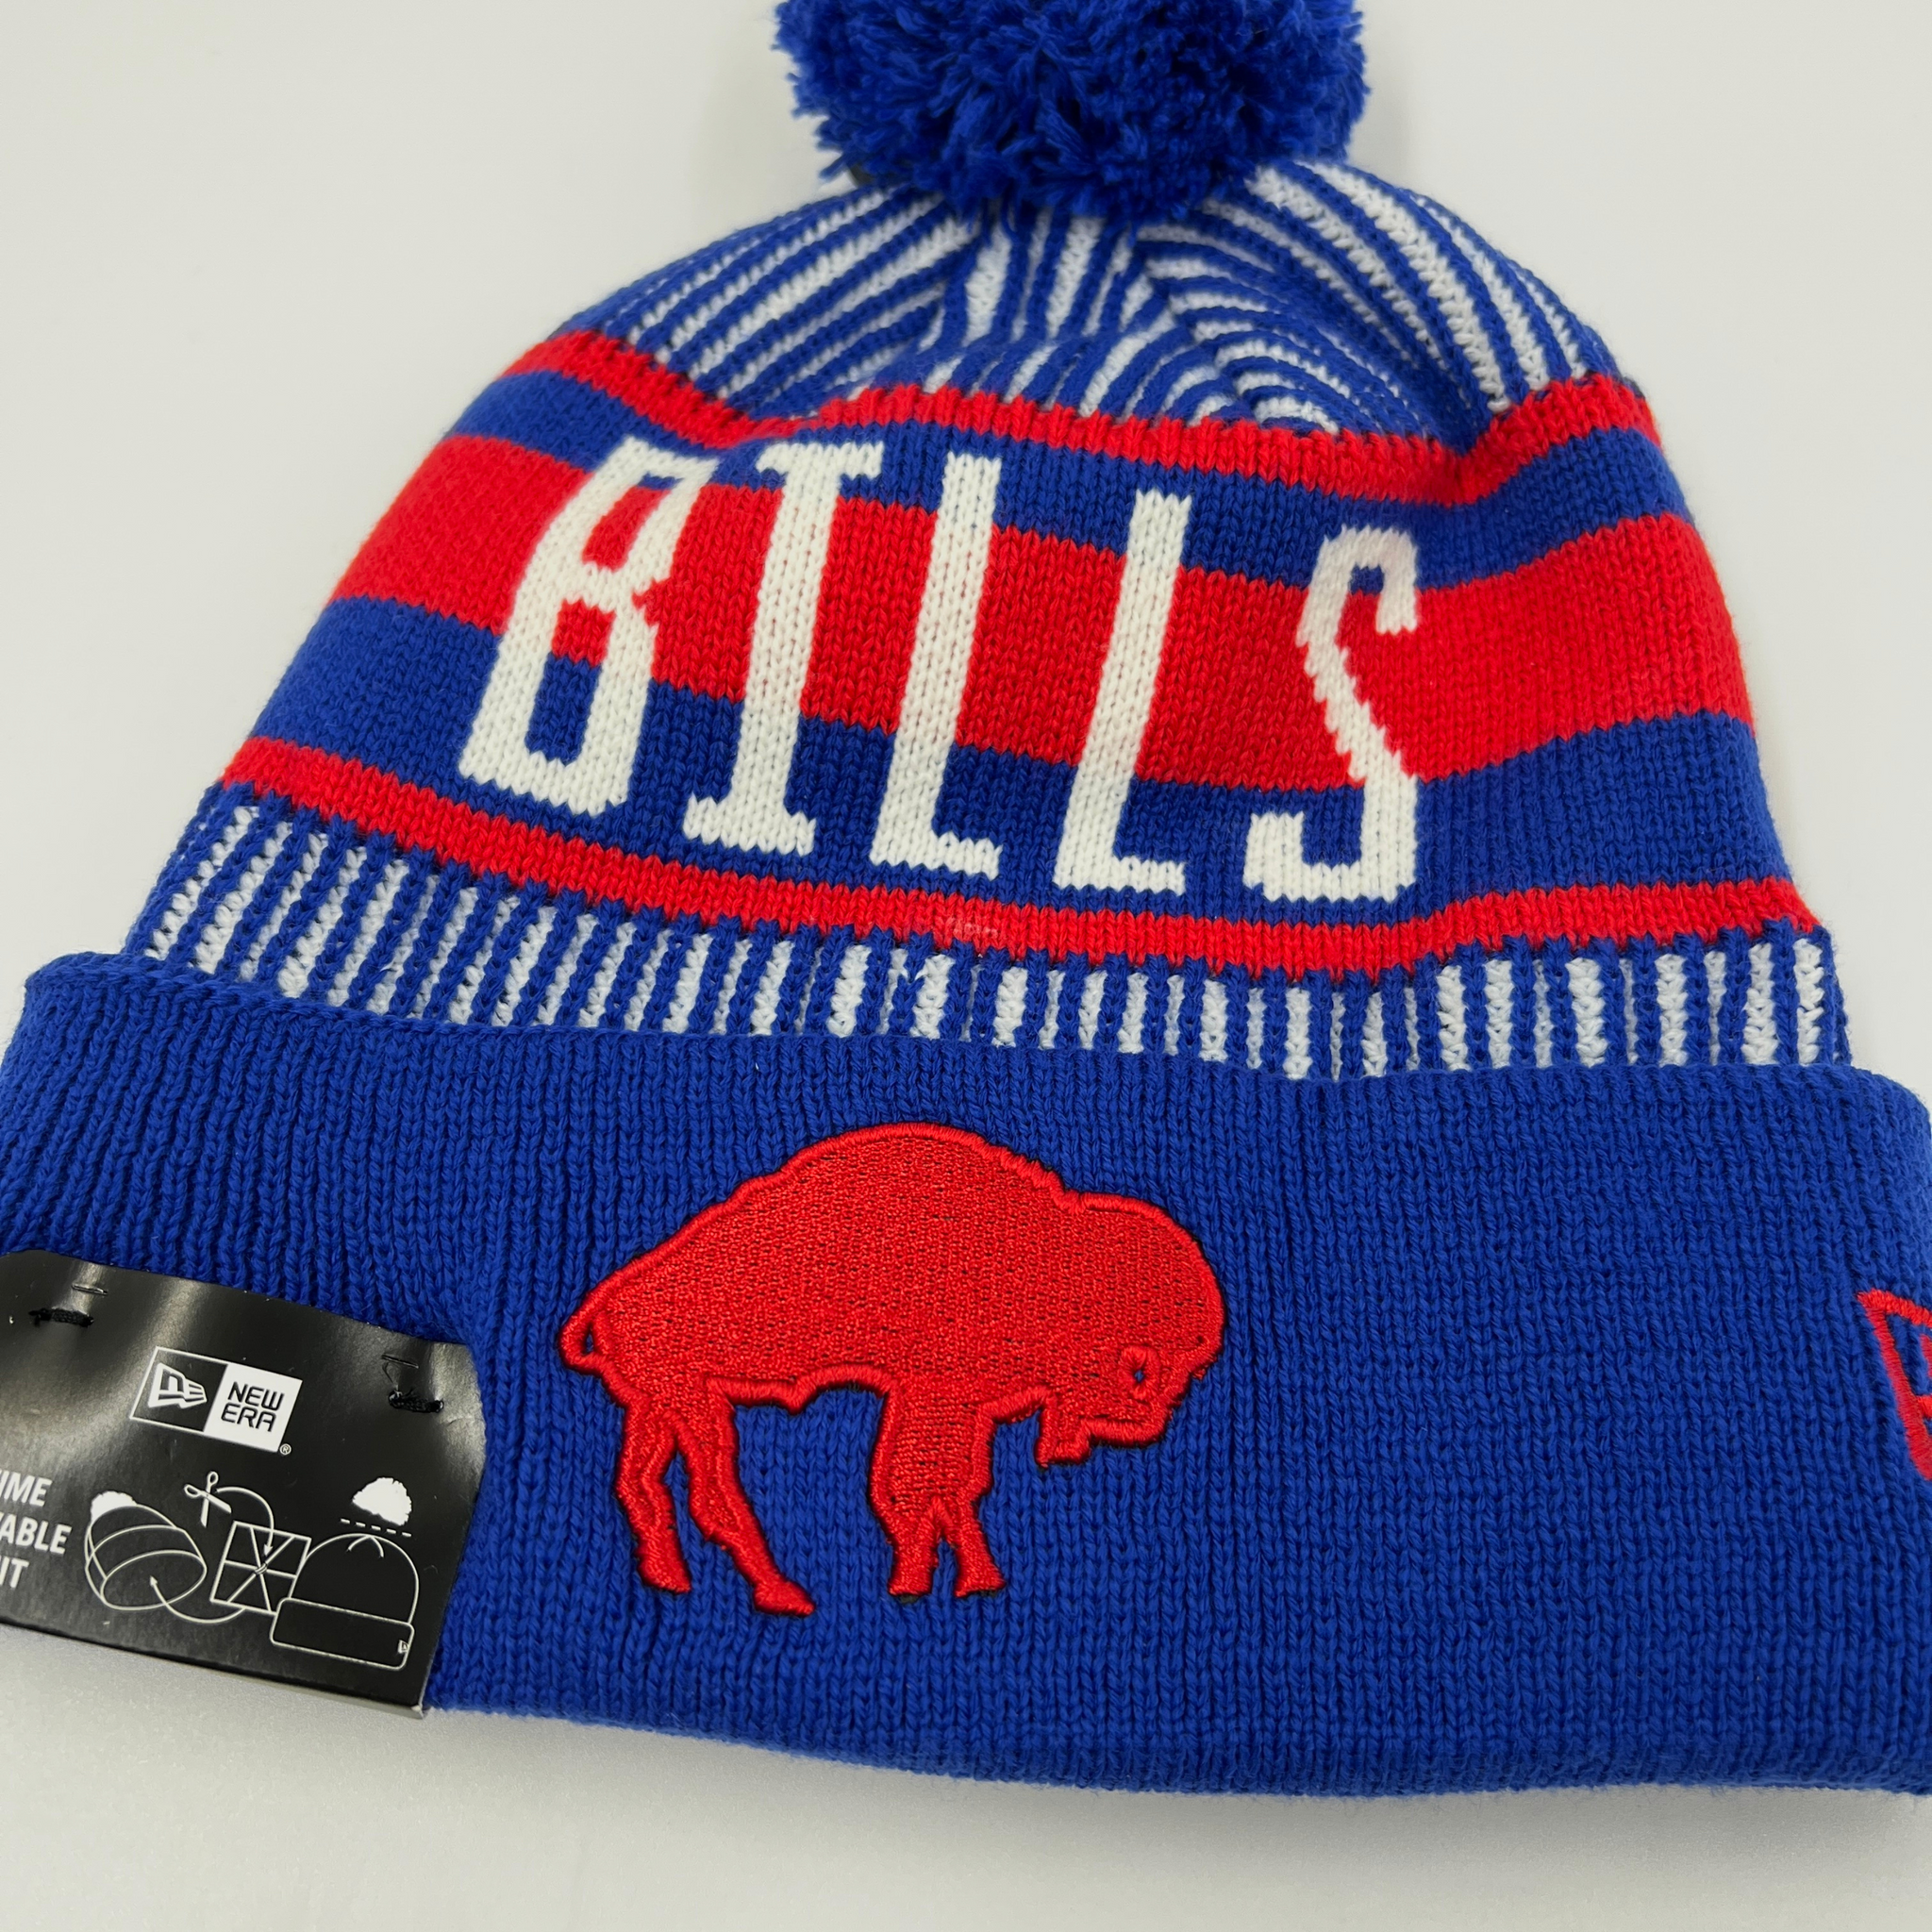 New Era Bills With Standing Buffalo Striped Knit Pom Pom Hat